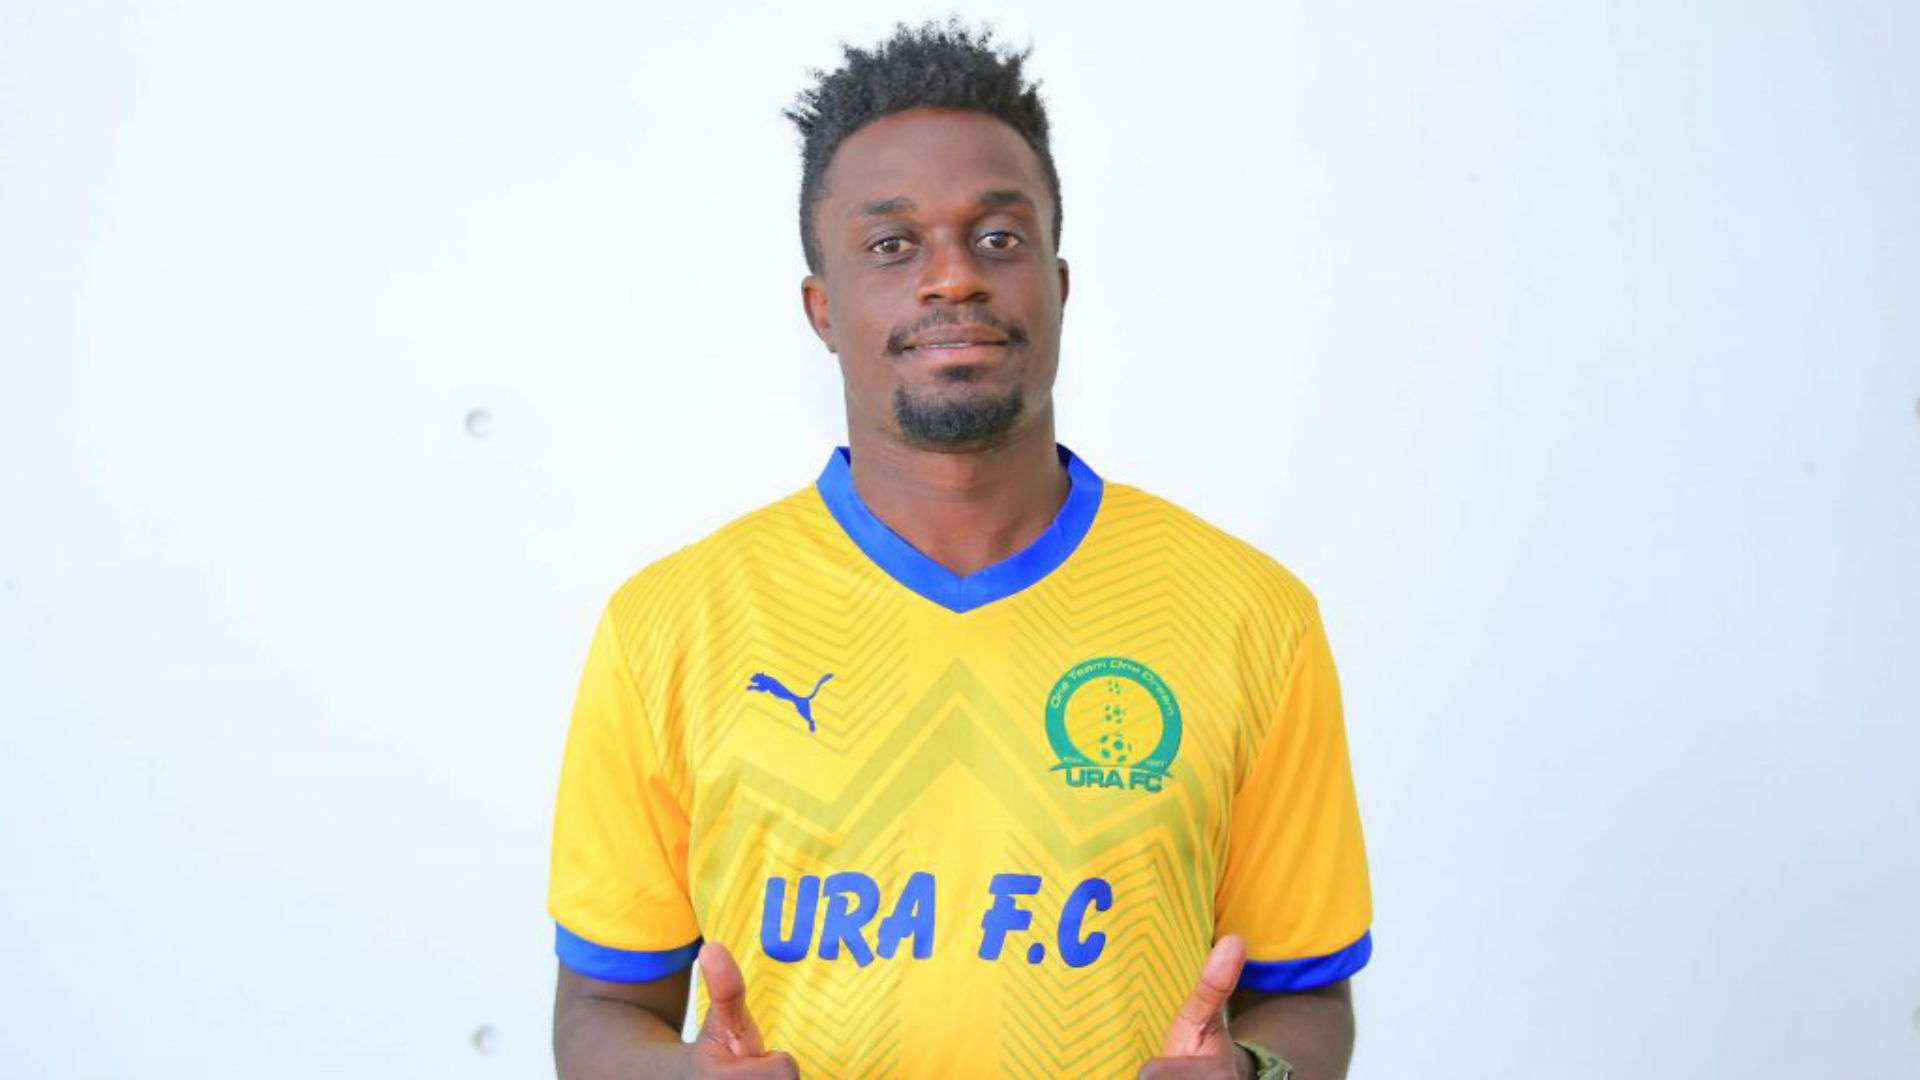 Faruku Katongole has joined URA FC.